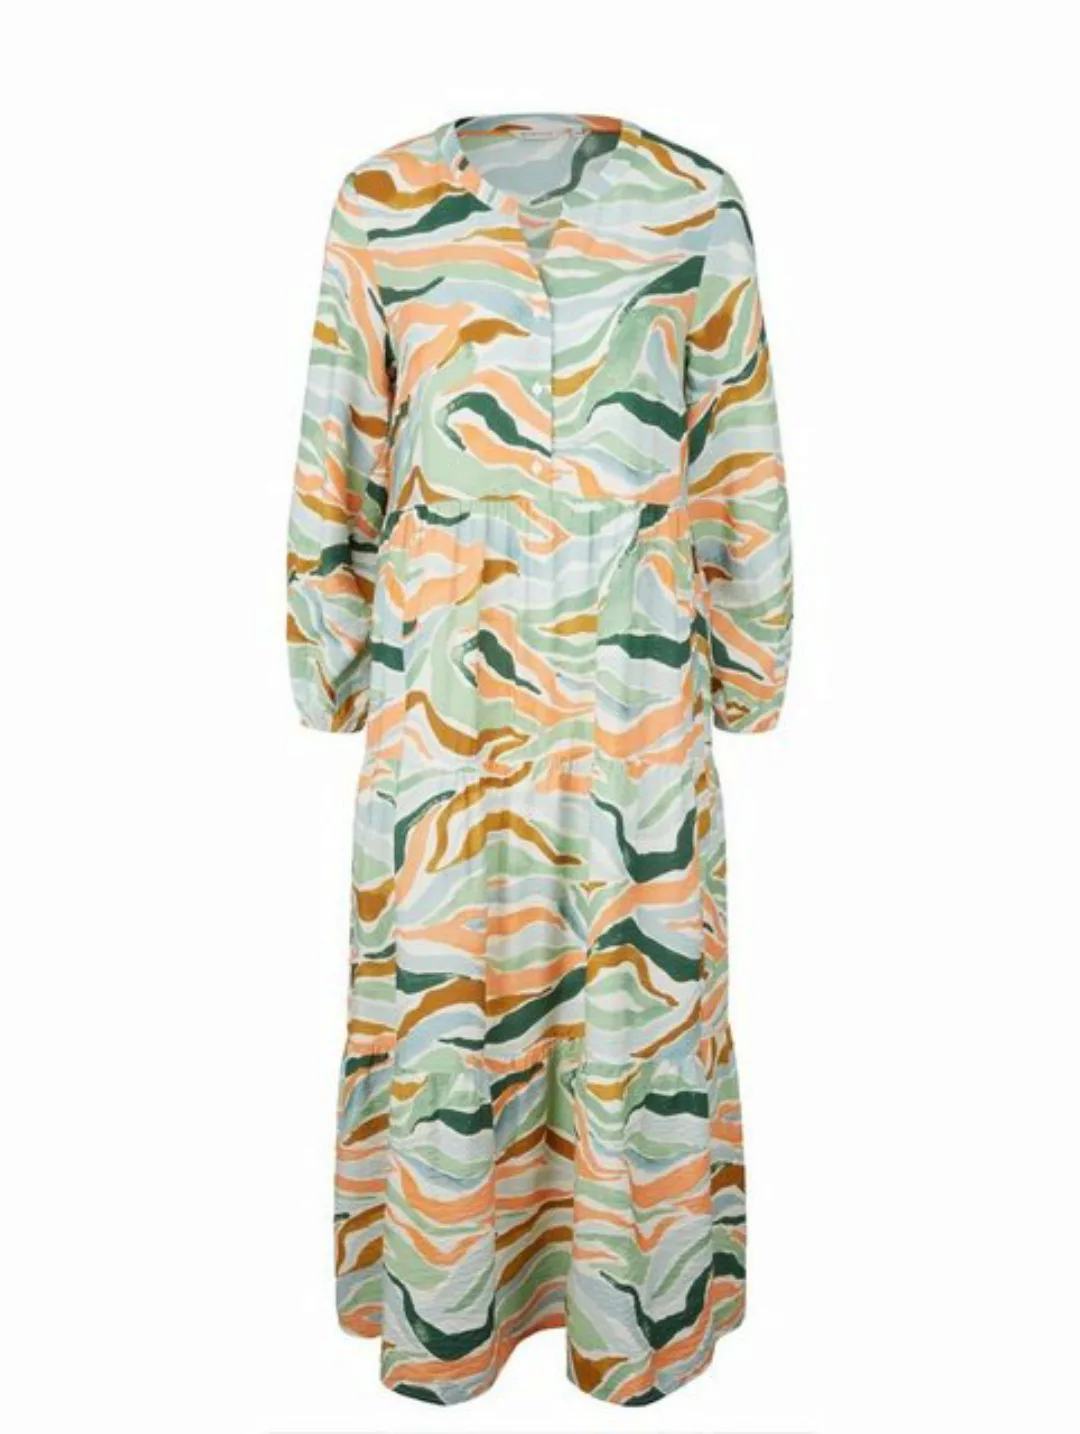 TOM TAILOR Sommerkleid maxi dress with volants, colorful wavy design günstig online kaufen